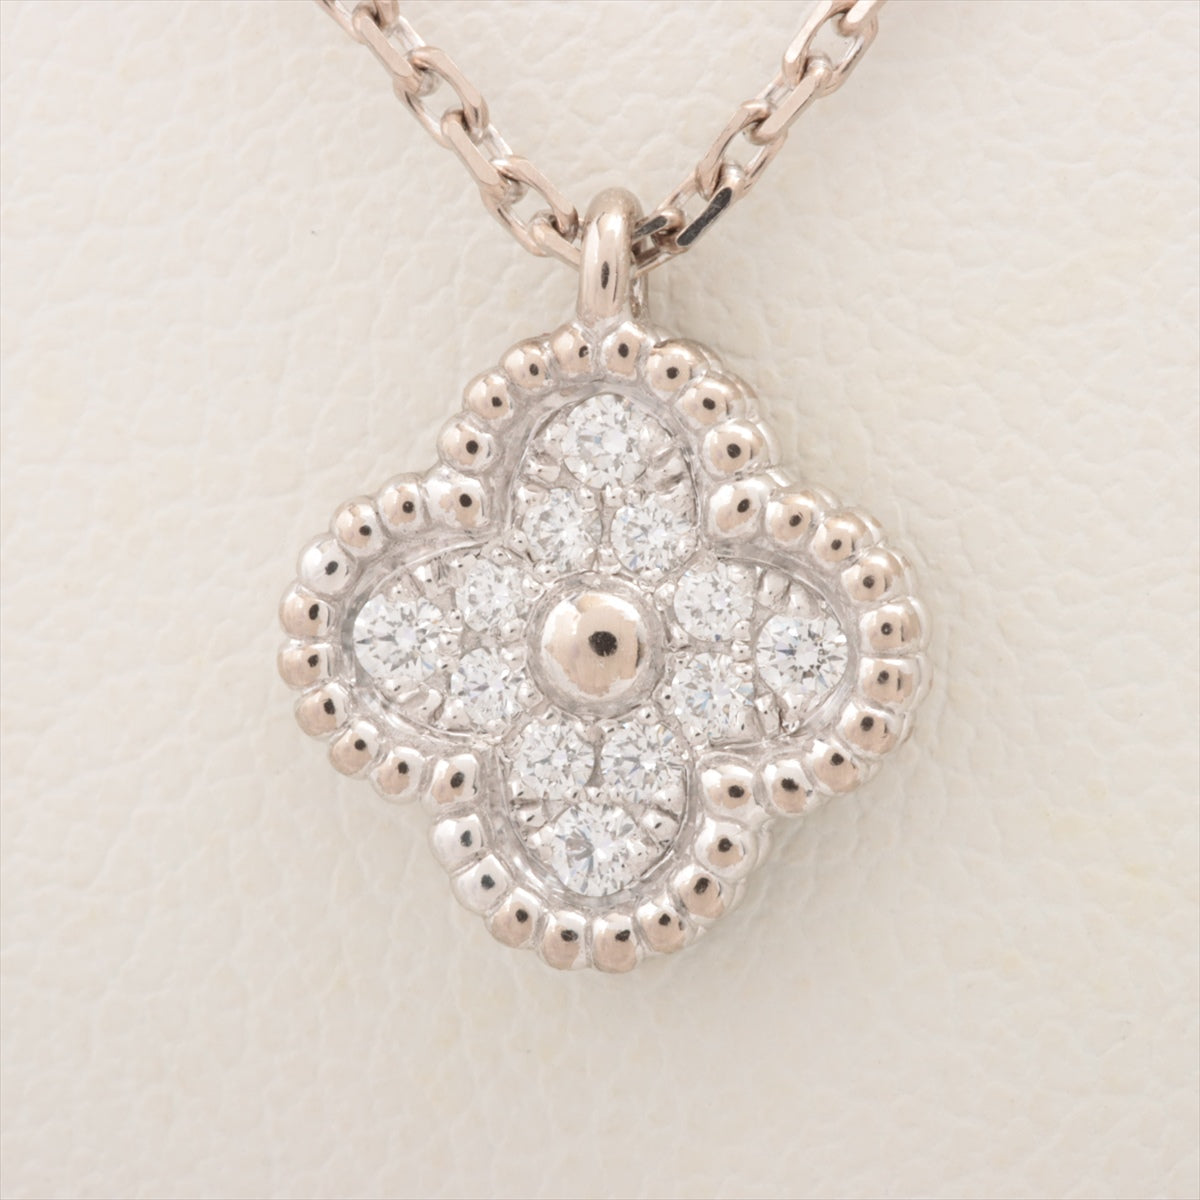 Van Cleef & Arpels Sweet Alhambra diamond Necklace 750(WG) 3.4g